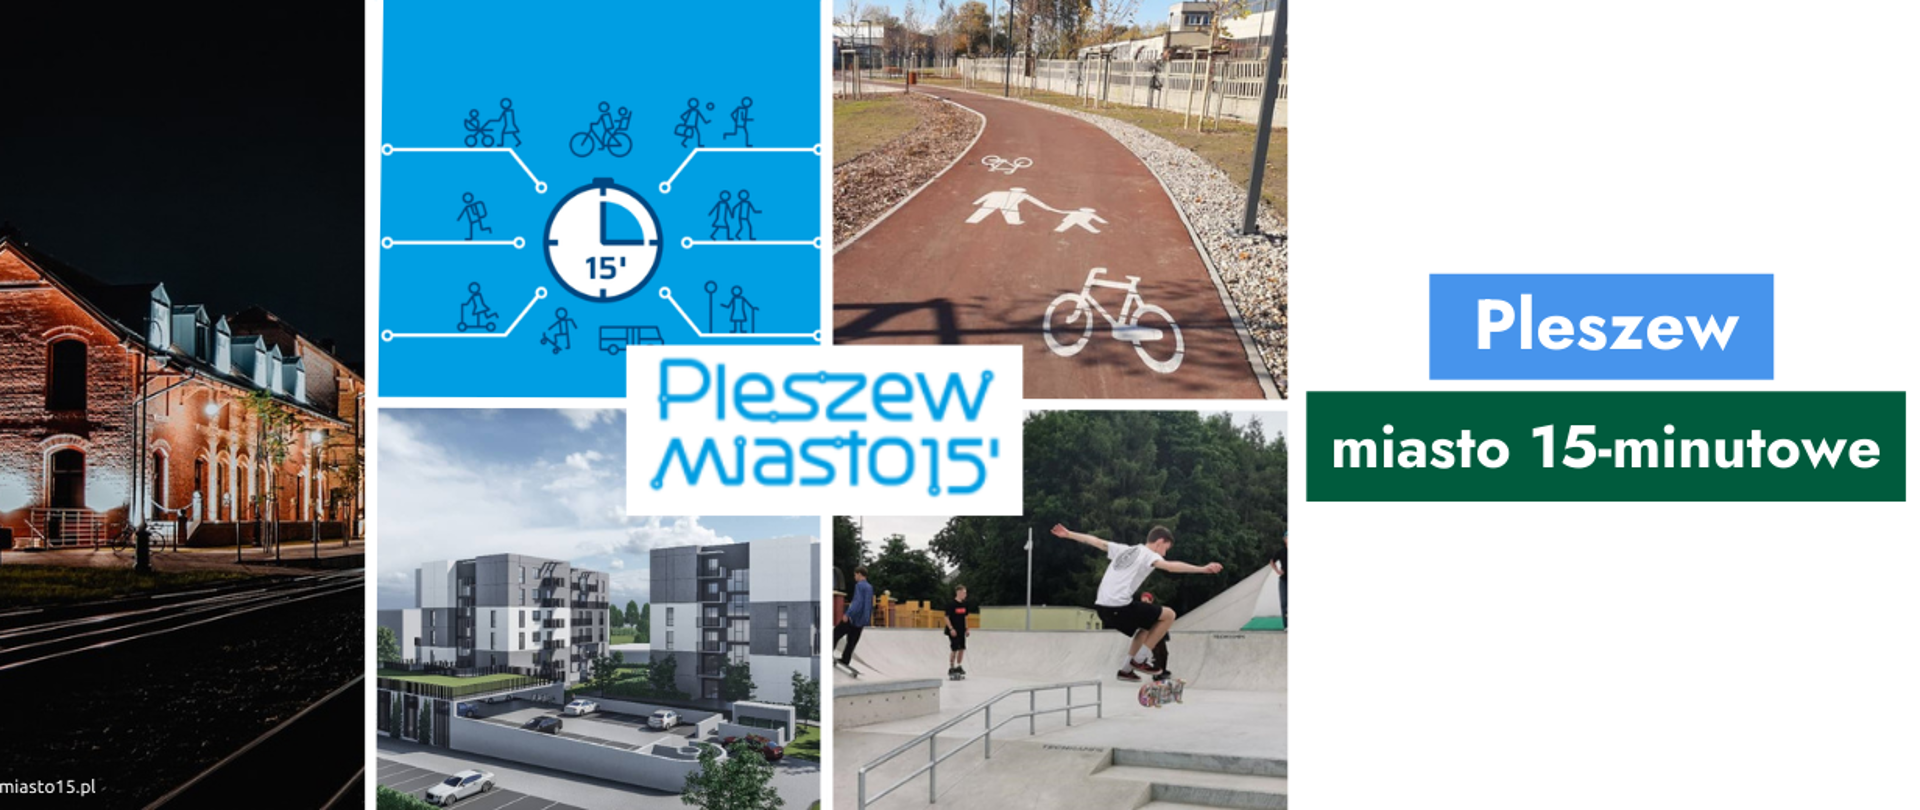 Grafika ze zdjęciami z Pleszewa i napis "Pleszew - miasto 15-minutowe""